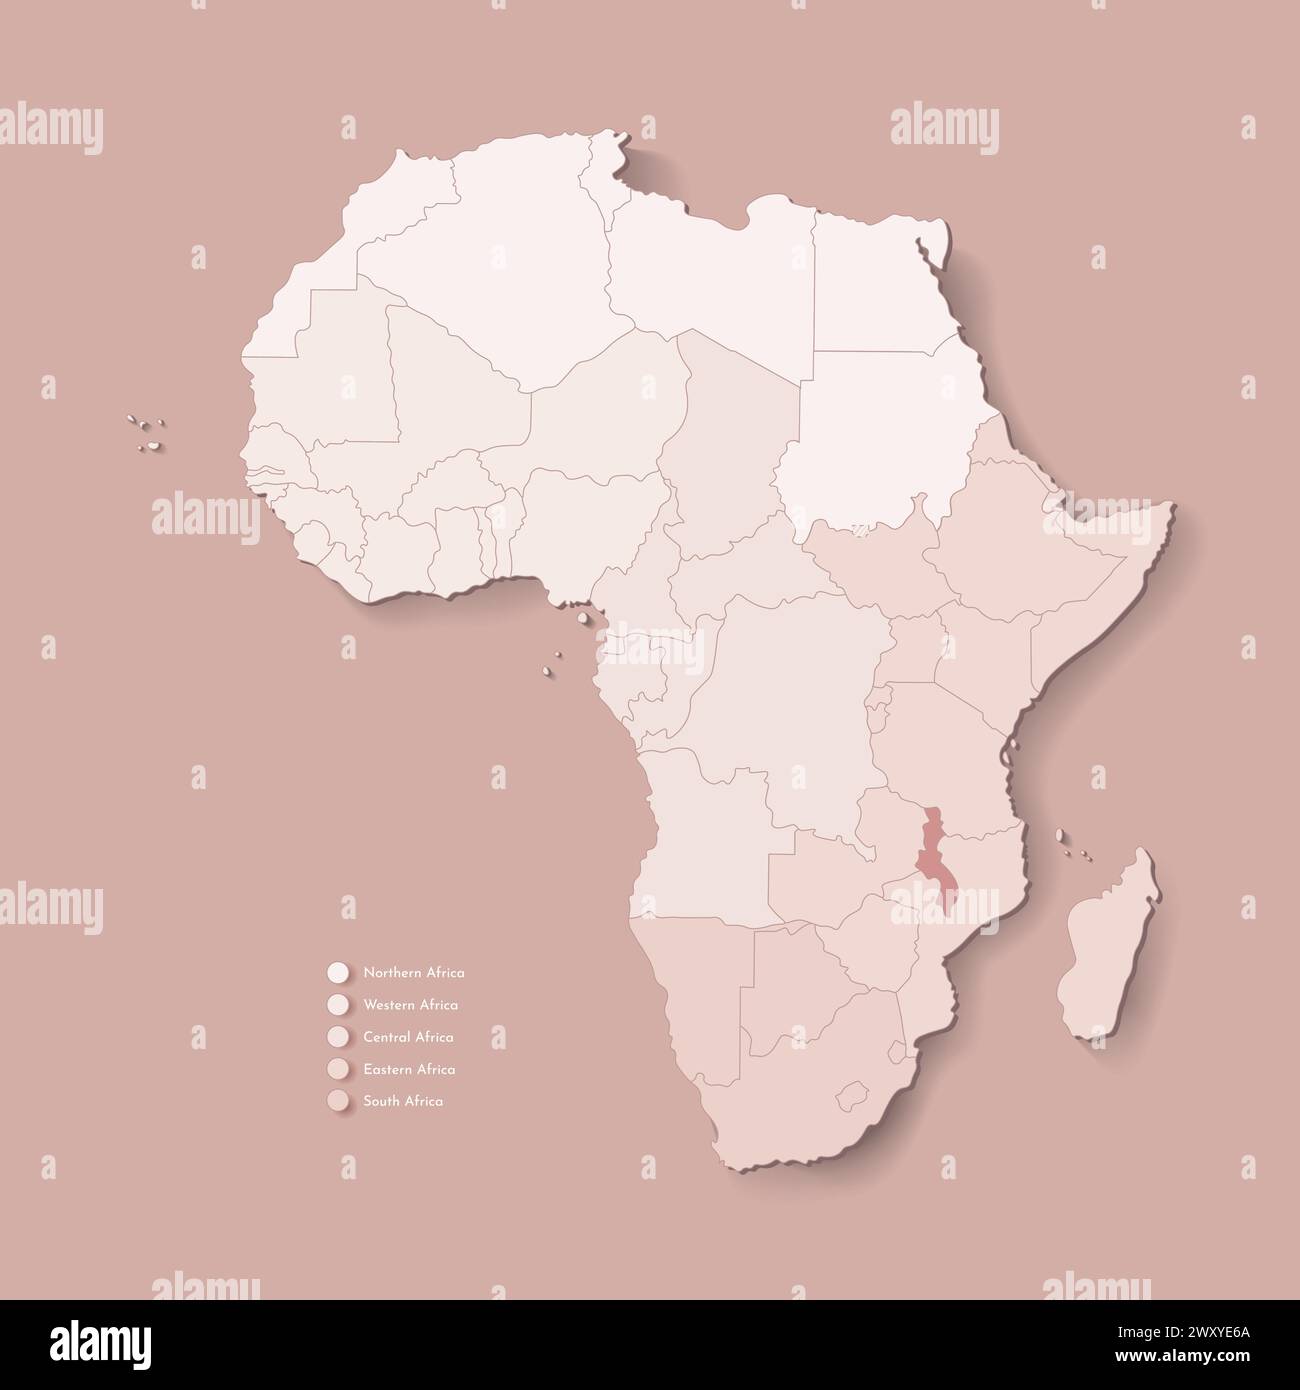 Illustrazione vettoriale con continente africano con confini di tutti gli stati e paese marcato Malawi. Mappa politica di colore marrone con occidentale, sud e. Illustrazione Vettoriale